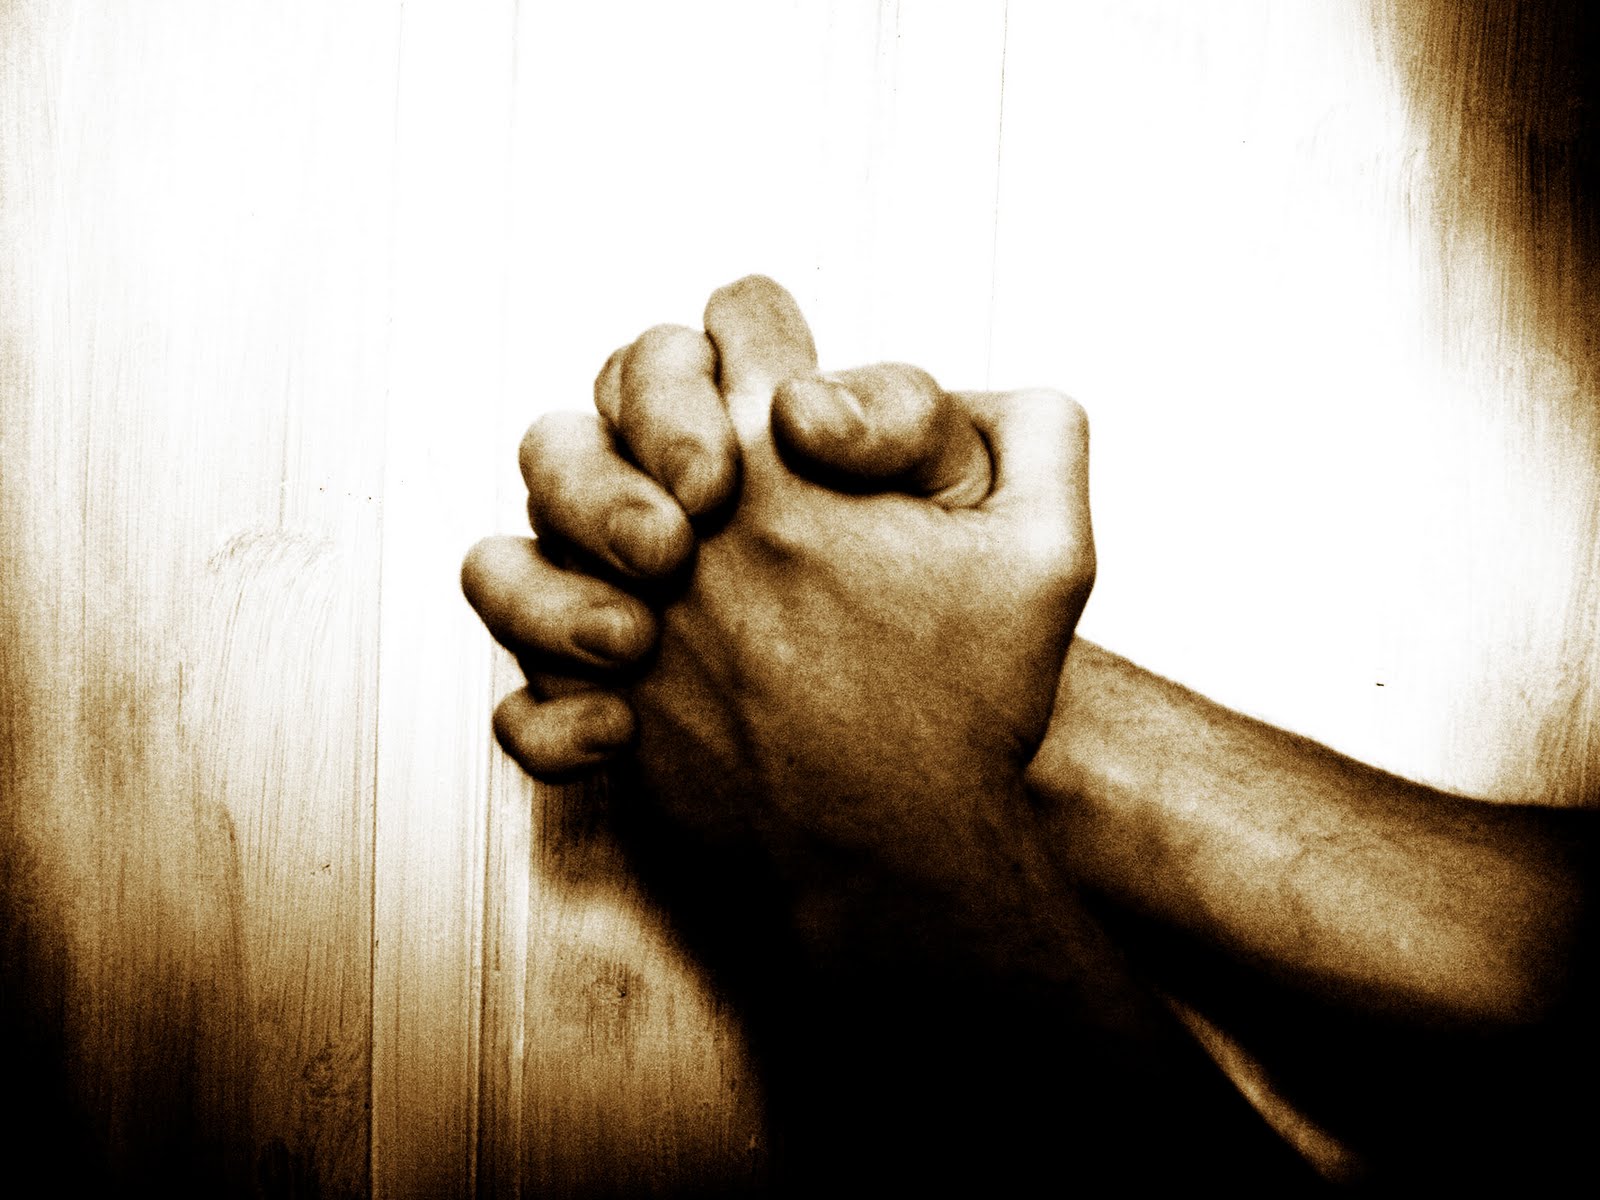 http://1.bp.blogspot.com/_QlahdtzMkfw/TEMwH1AYBuI/AAAAAAAAABU/rOYmKZvoz-Y/s1600/prayer%2Band%2Bfasting.jpg